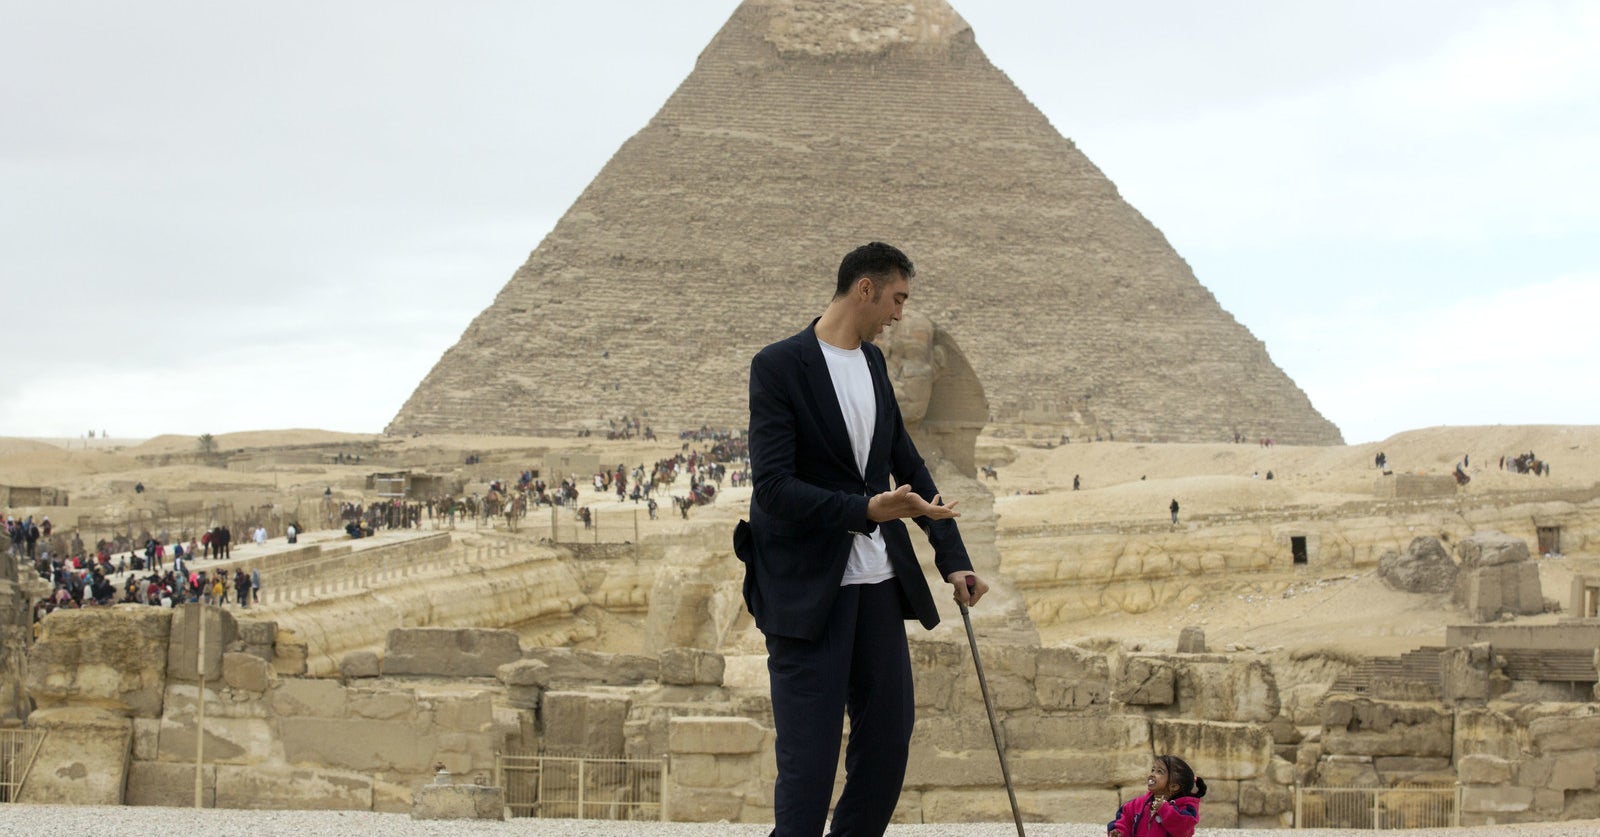 世界一背が高い男性と、世界一背が低い女性がピラミッドで集まった。その写真に心温まる。